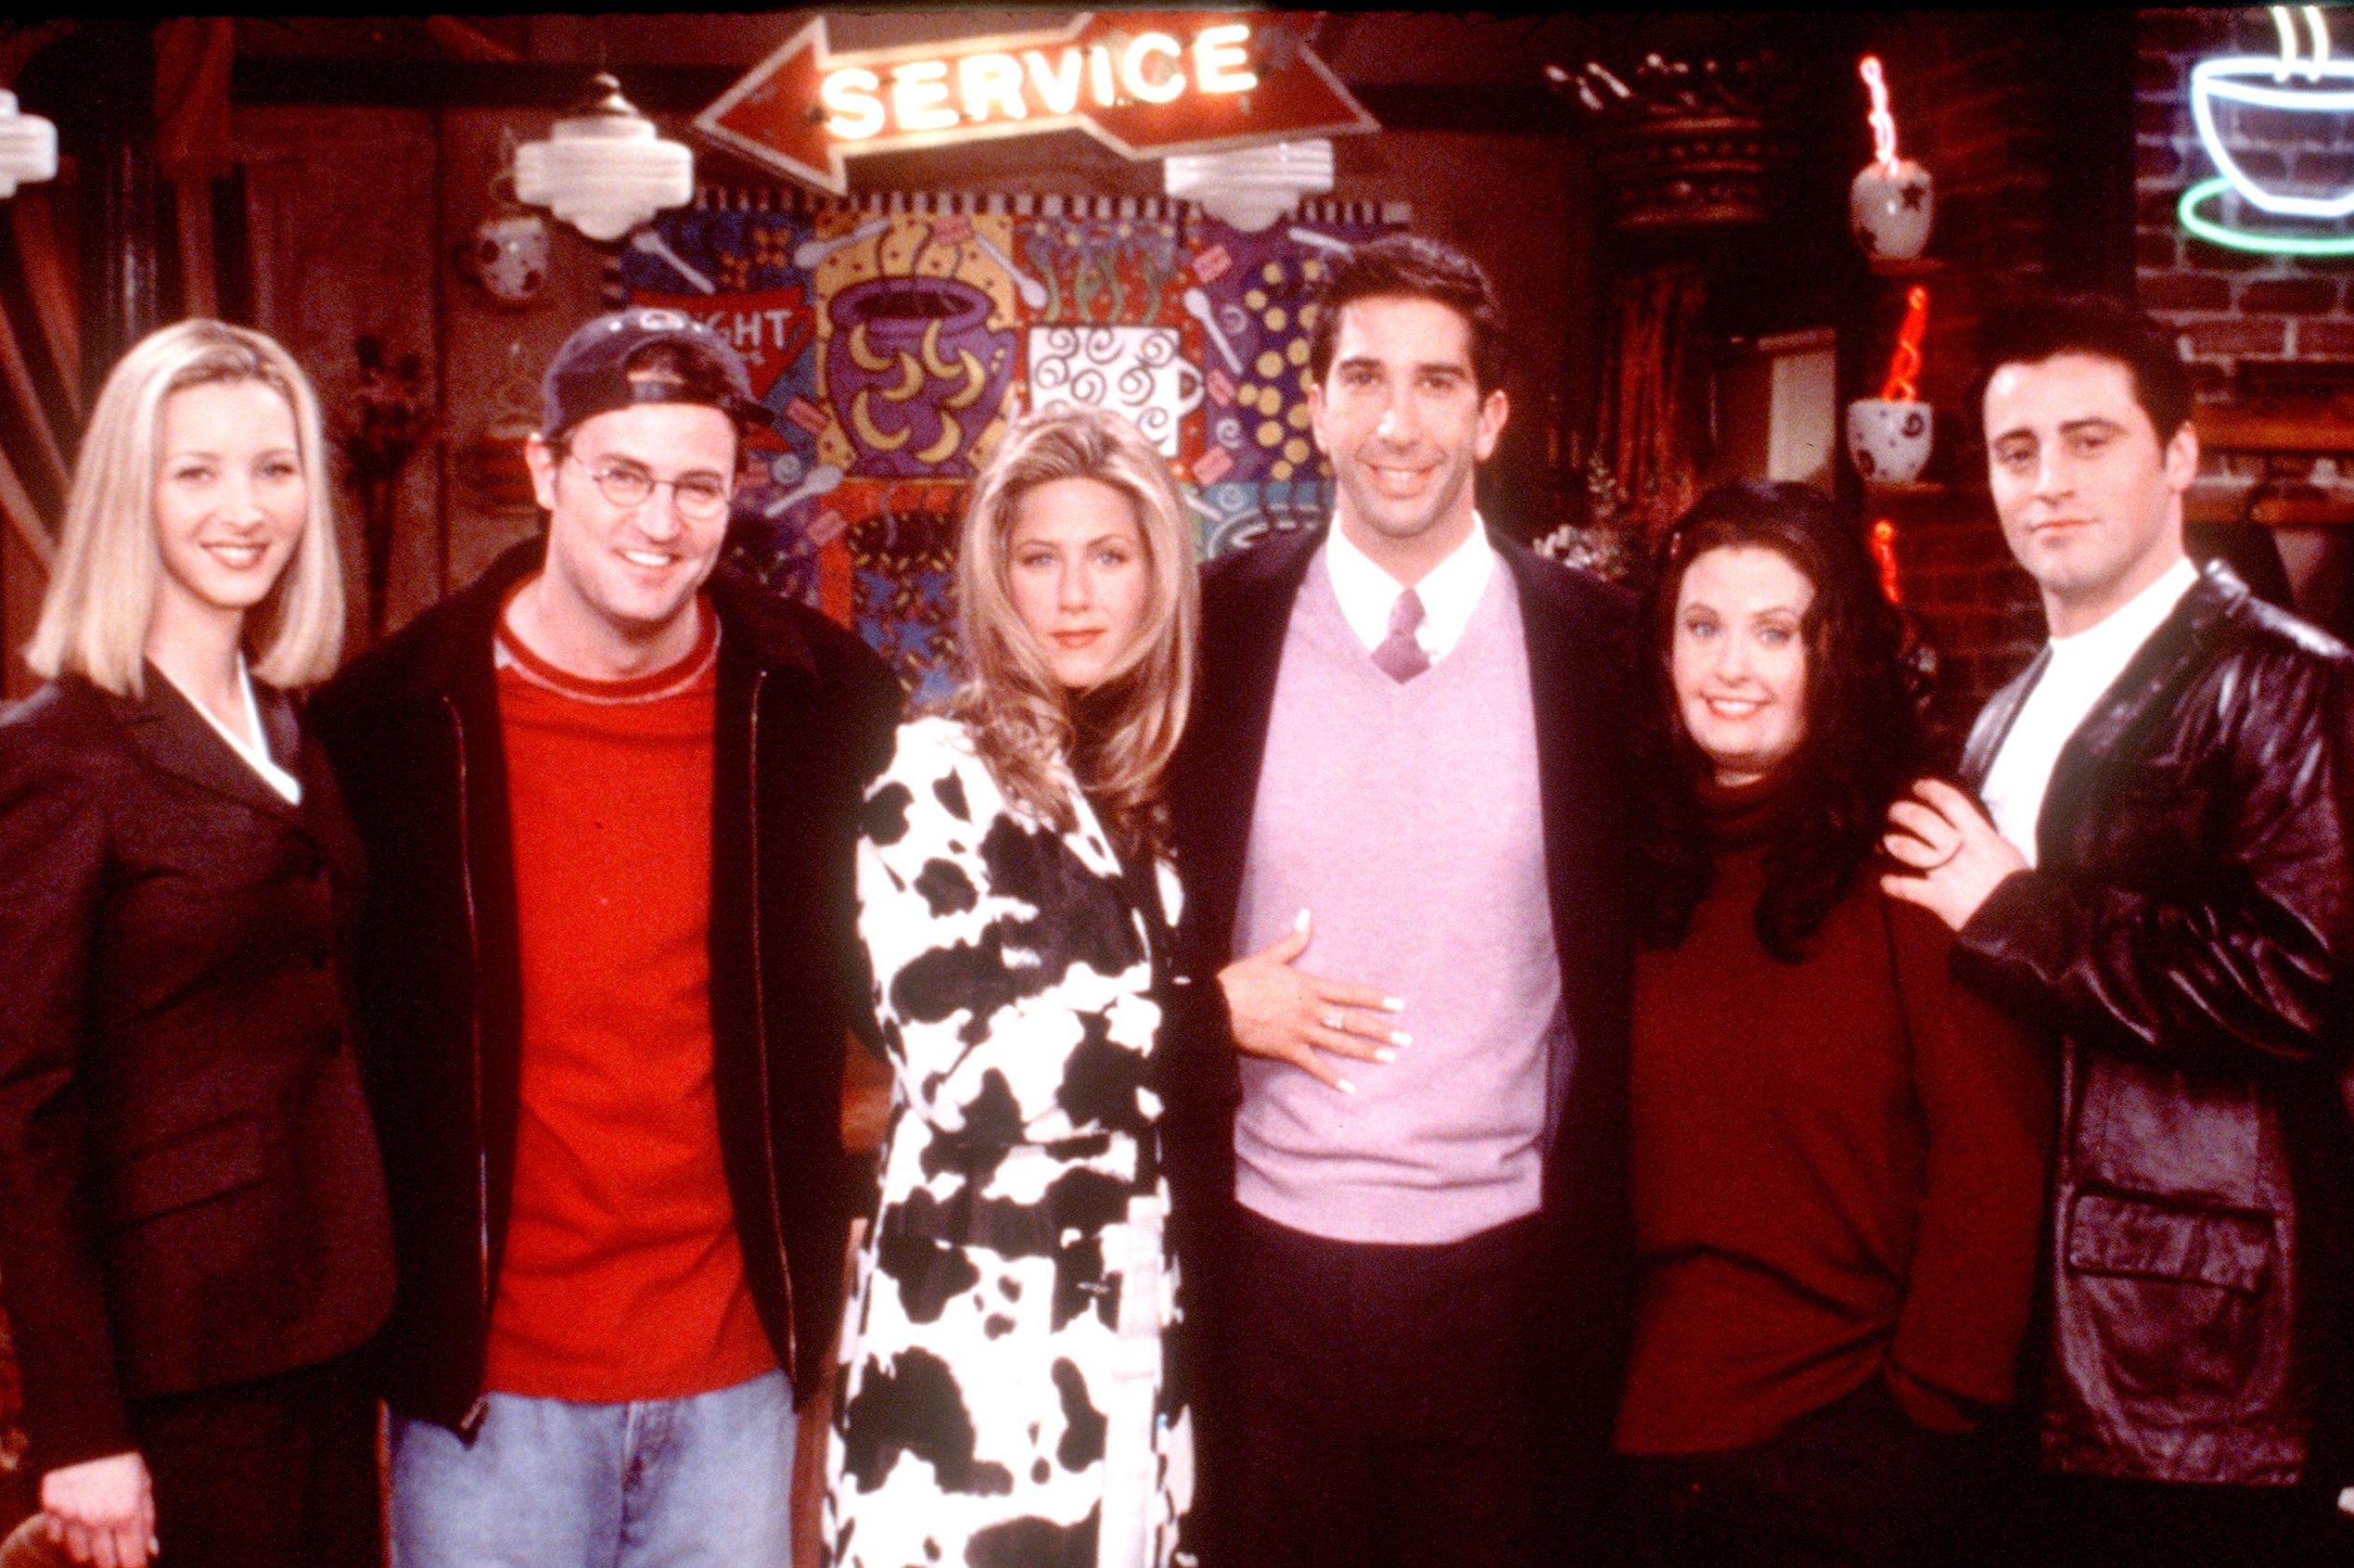 Perry fotografiado junto a sus compañeros de elenco en una imagen para promover la popular serie de televisión